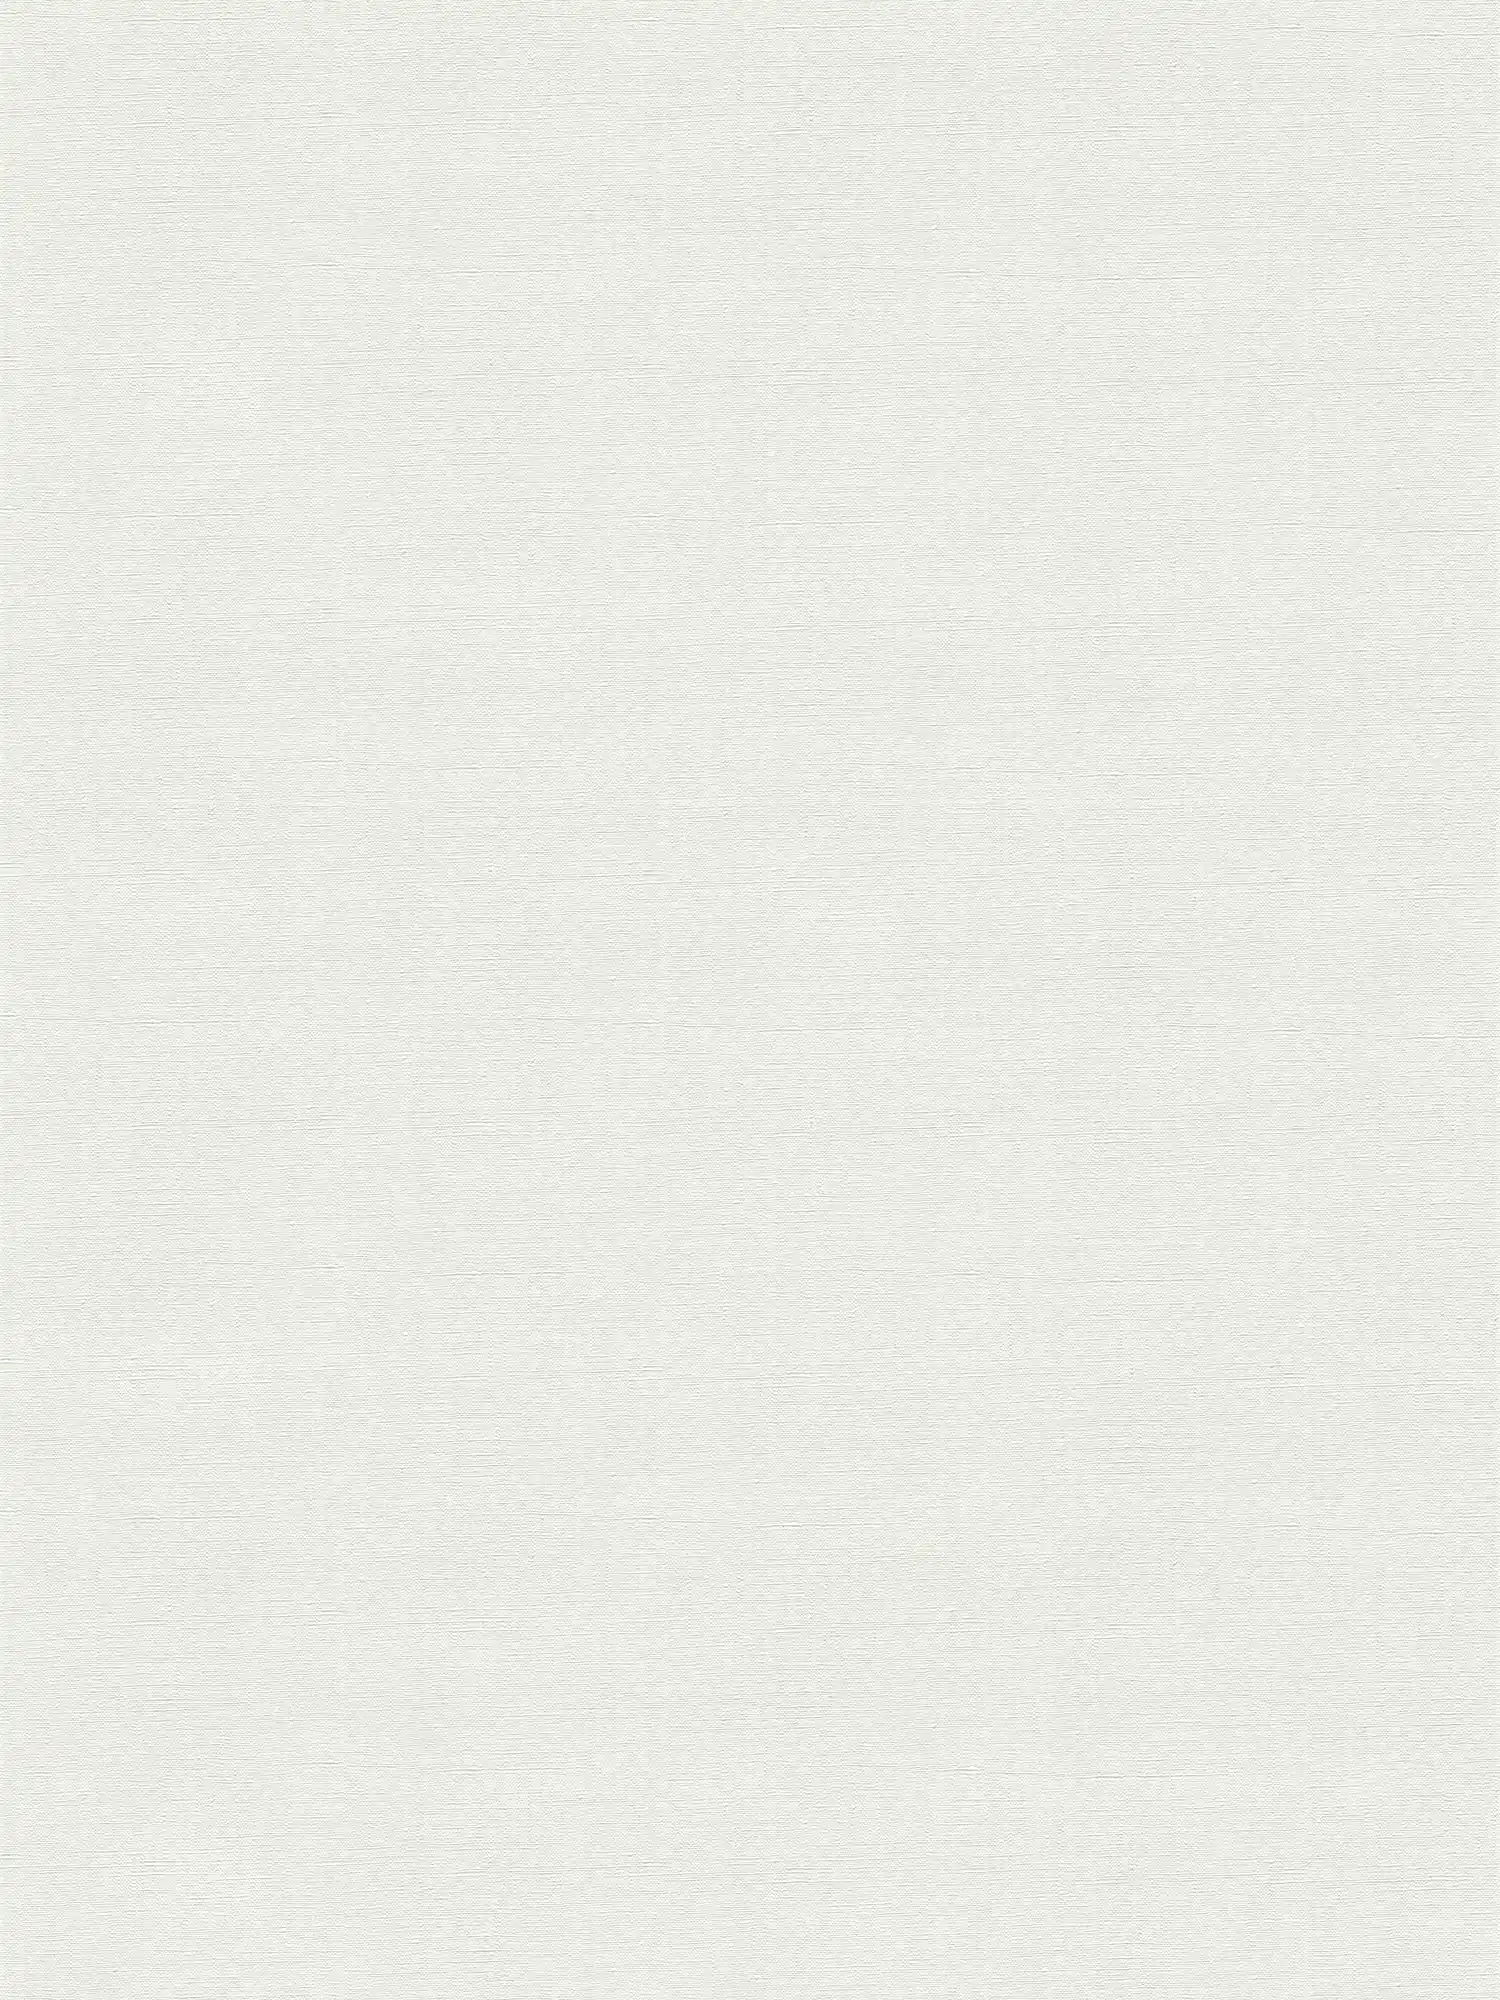 Carta da parati in tessuto non tessuto con motivo a trama fine - grigio chiaro, bianco
